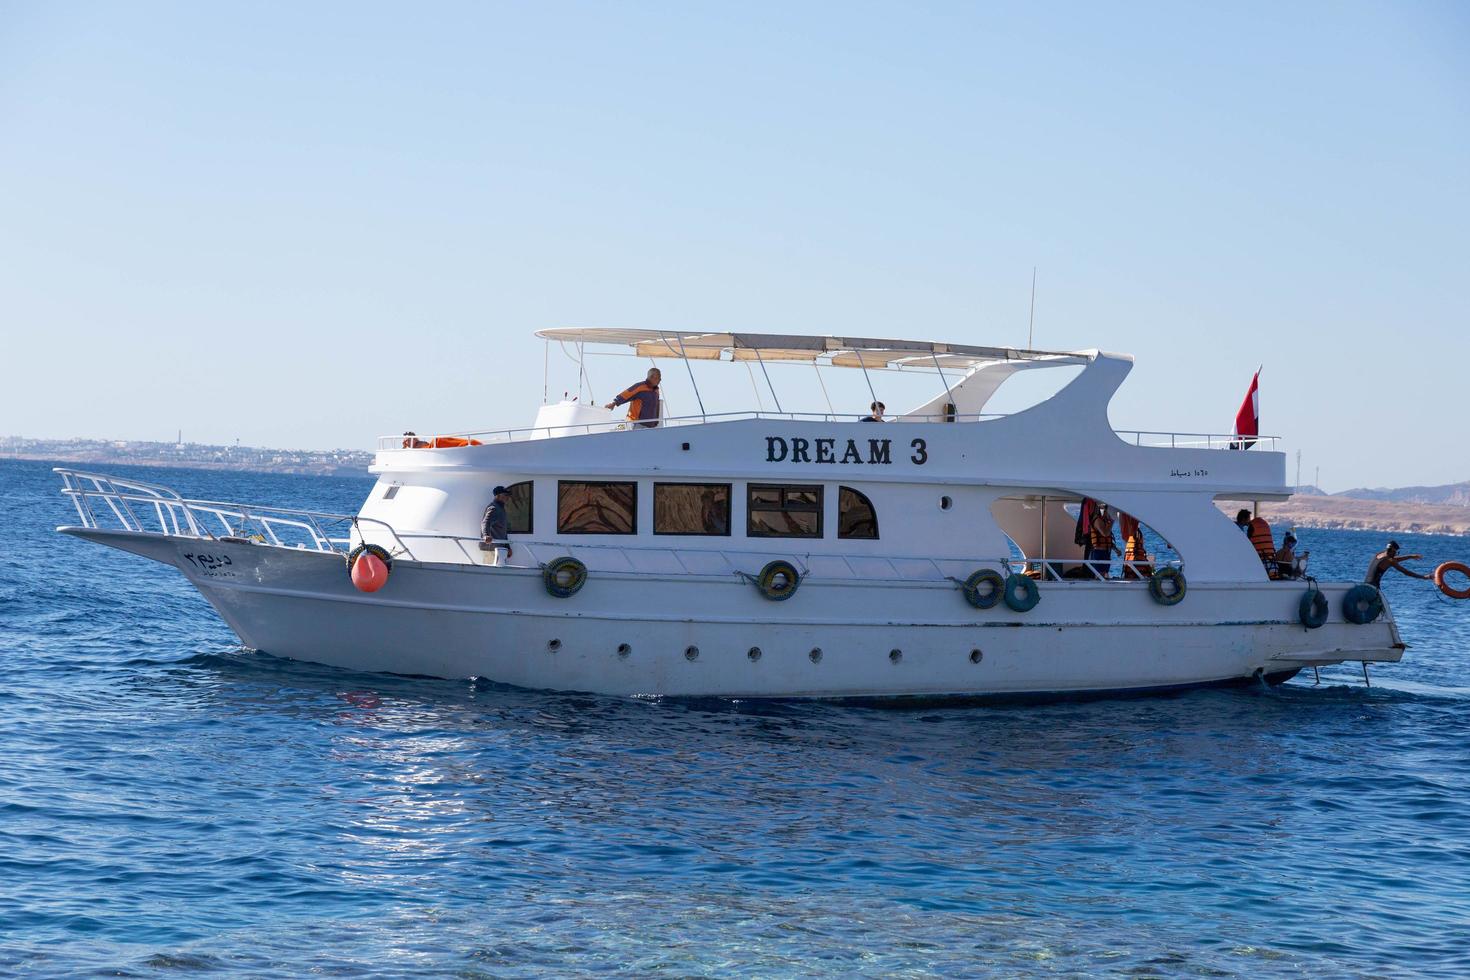 sharm el sheikh, egito - 21 de janeiro de 2021 - barco turístico de recreio com passageiros usados para mergulho no mar vermelho foto